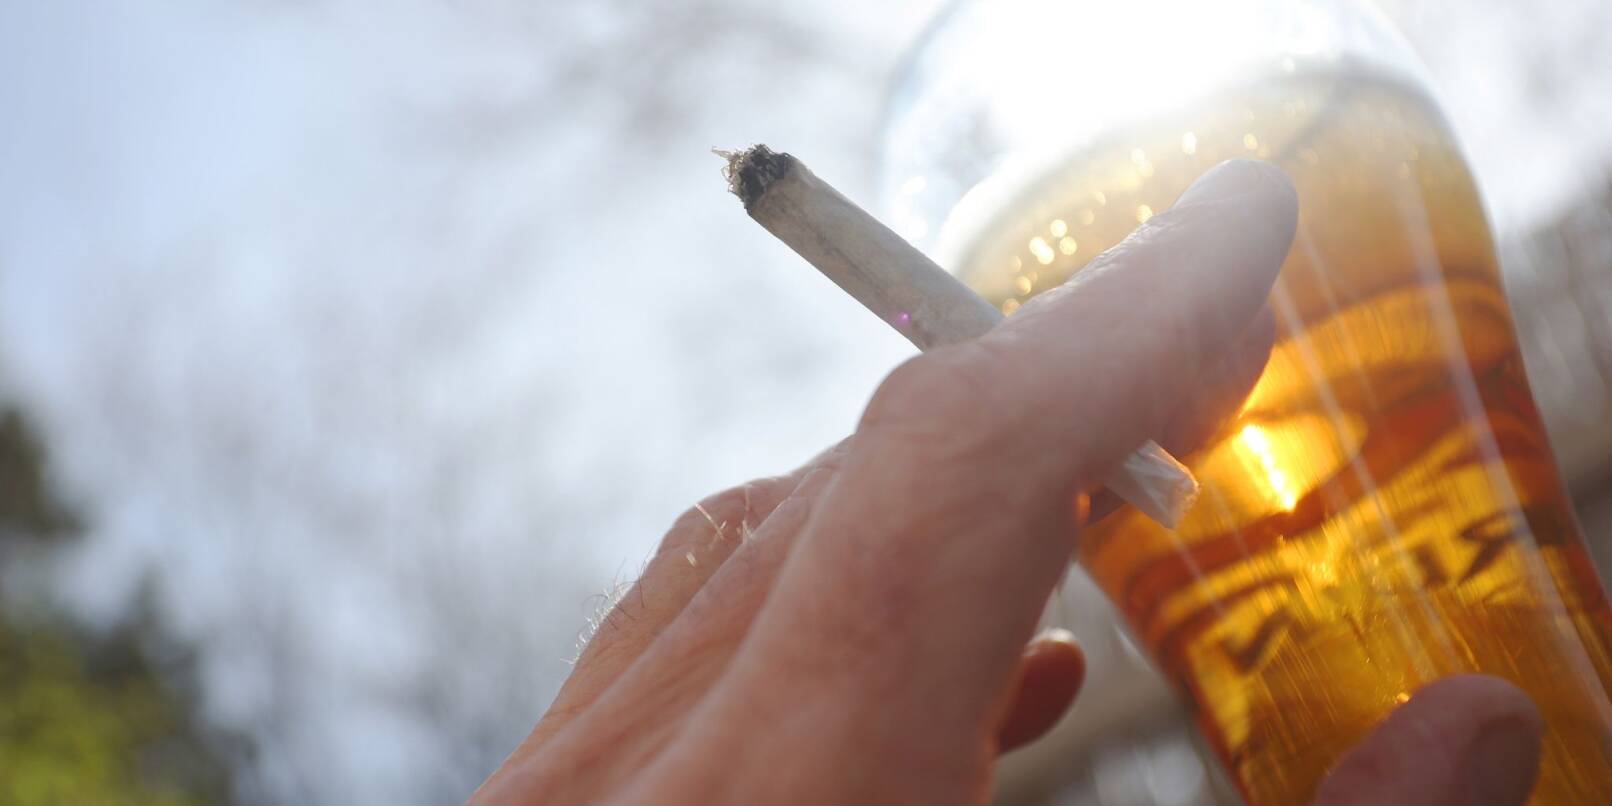 Jeder zweite Bundesbürger stört sich an dem typischen Geruch von Cannabis-Rauch.